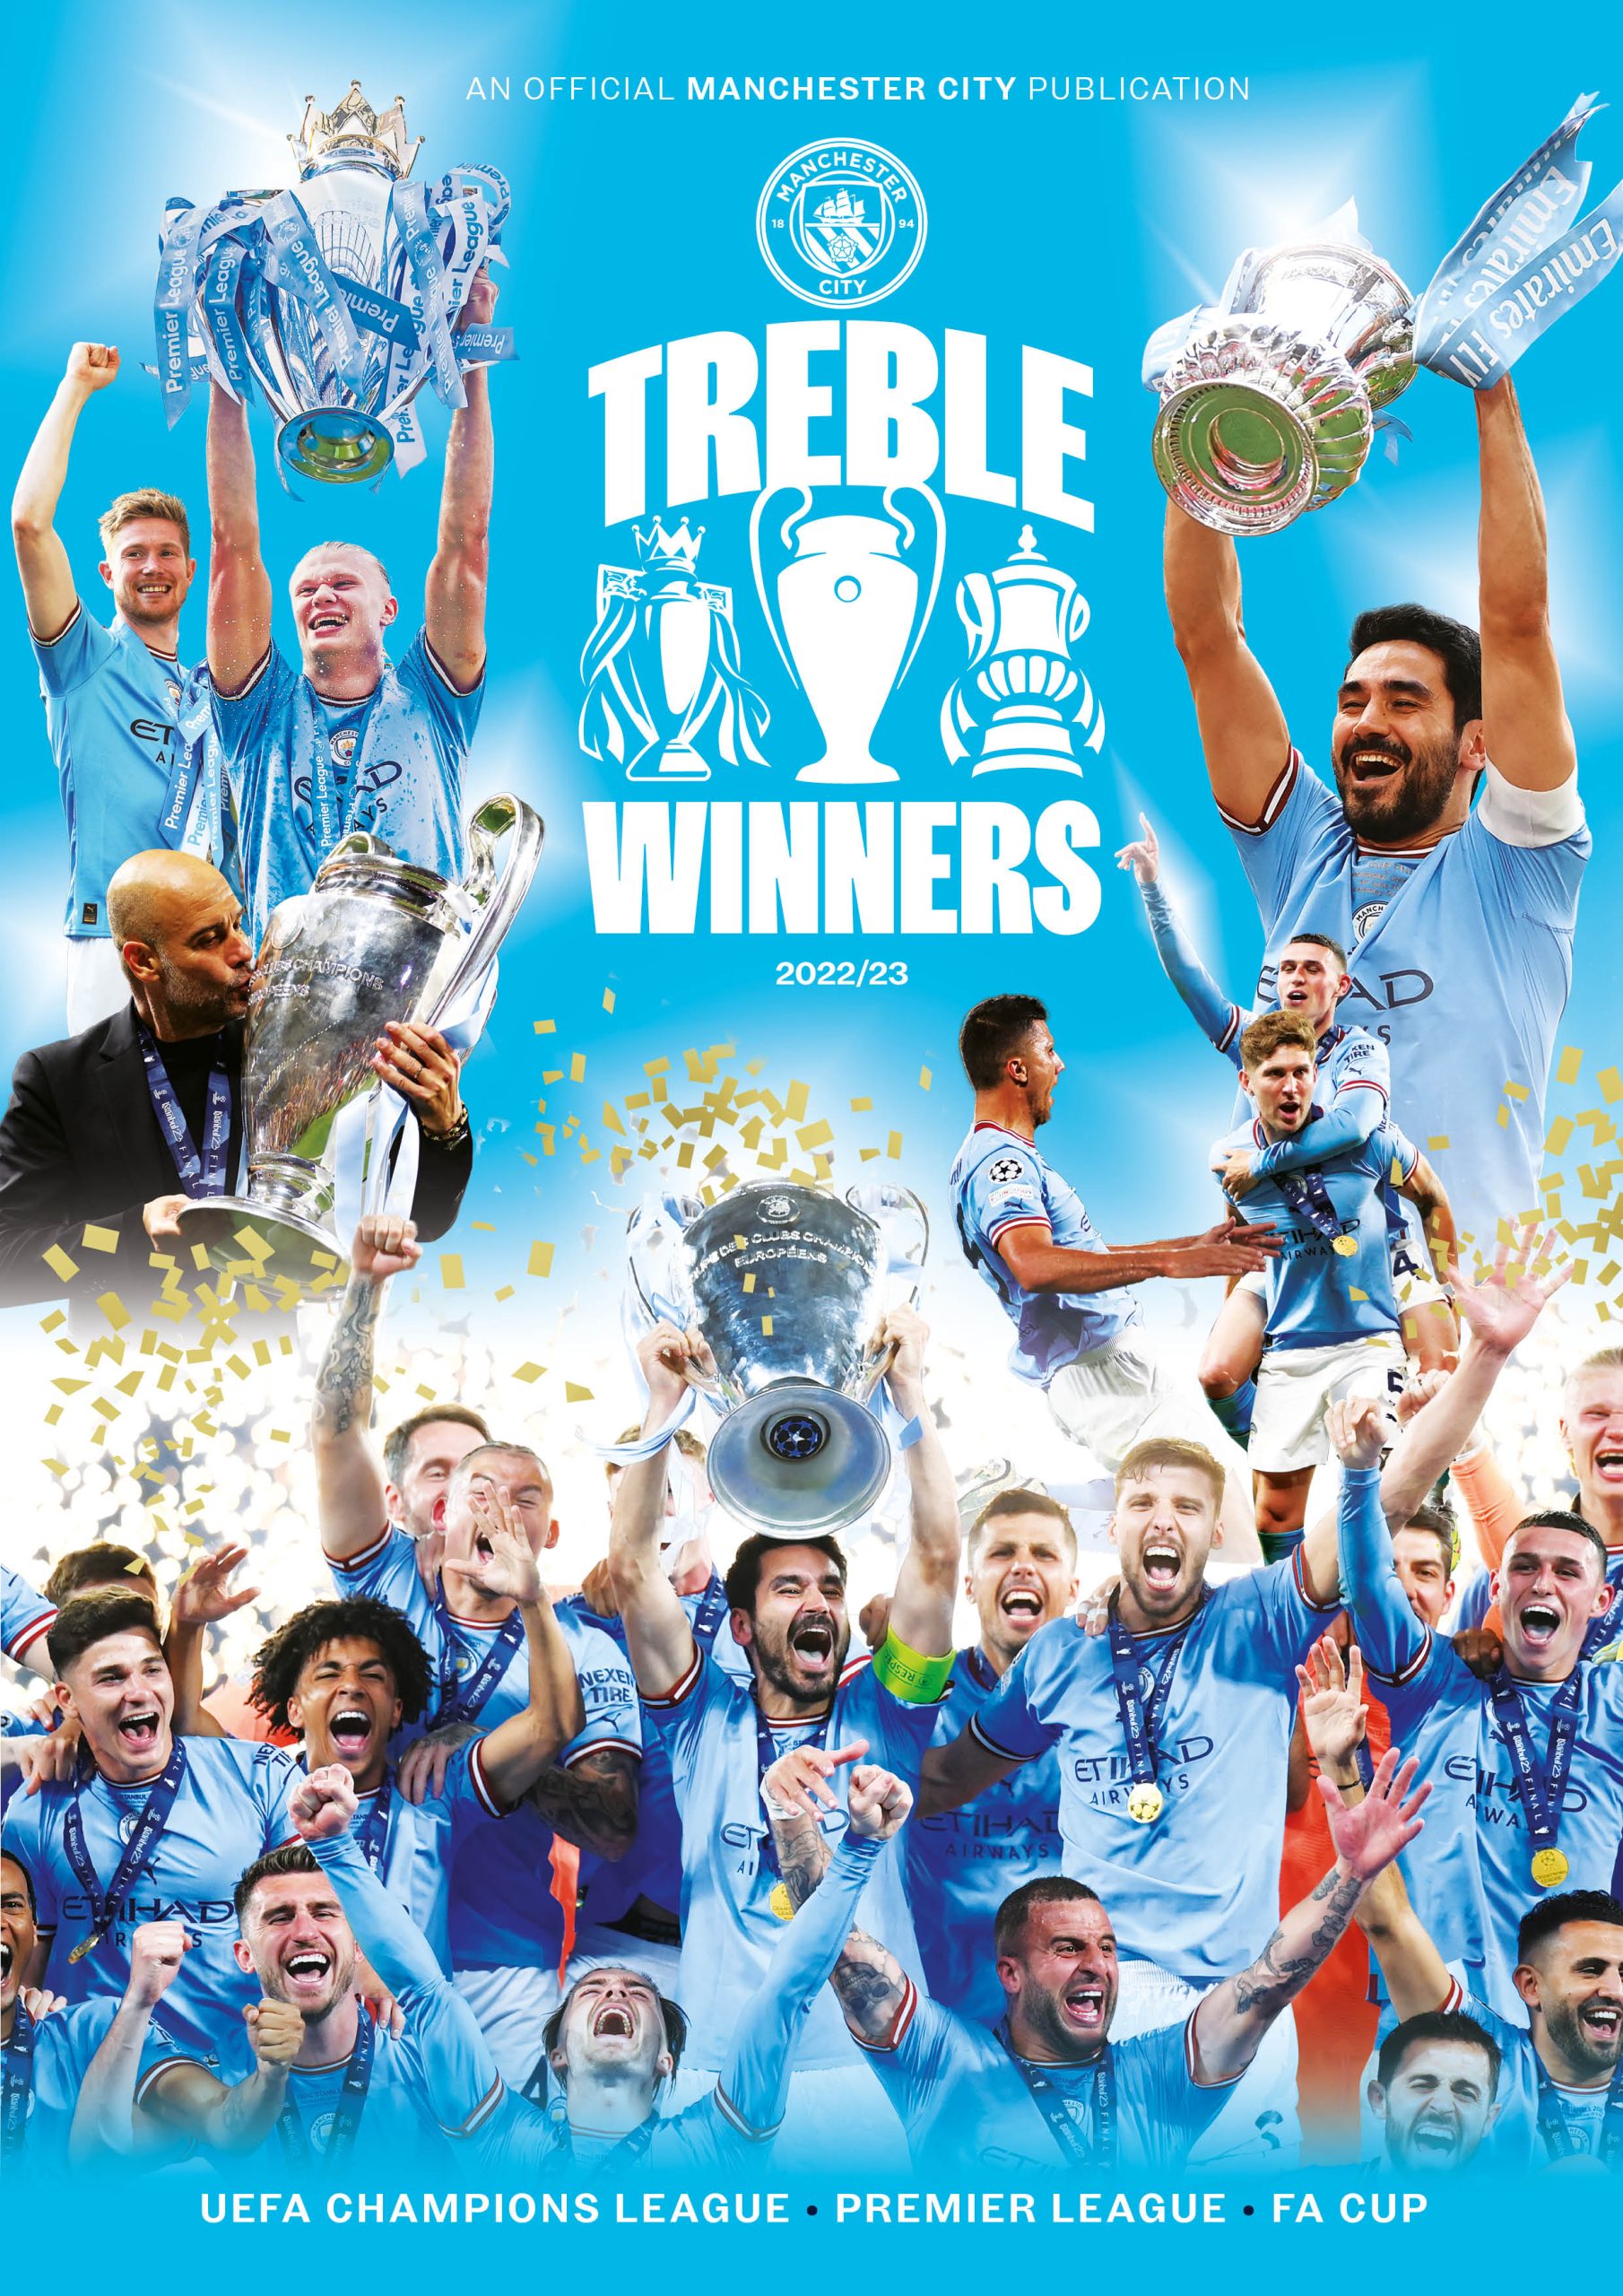 Manchester City Treble Winners 202223 Souvenir Publication Reach